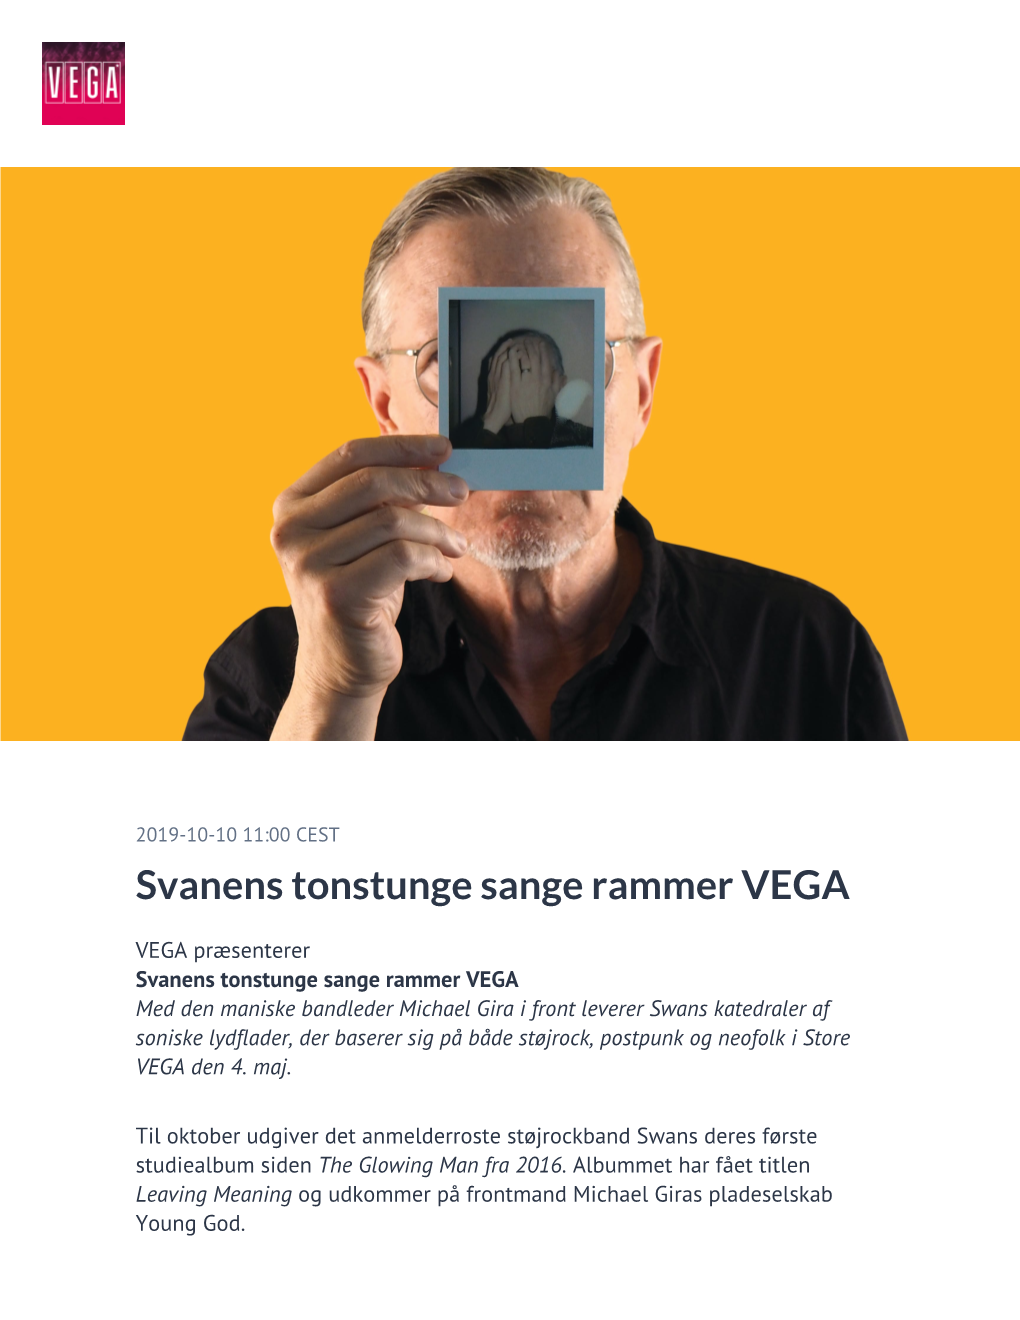 ​Svanens Tonstunge Sange Rammer VEGA